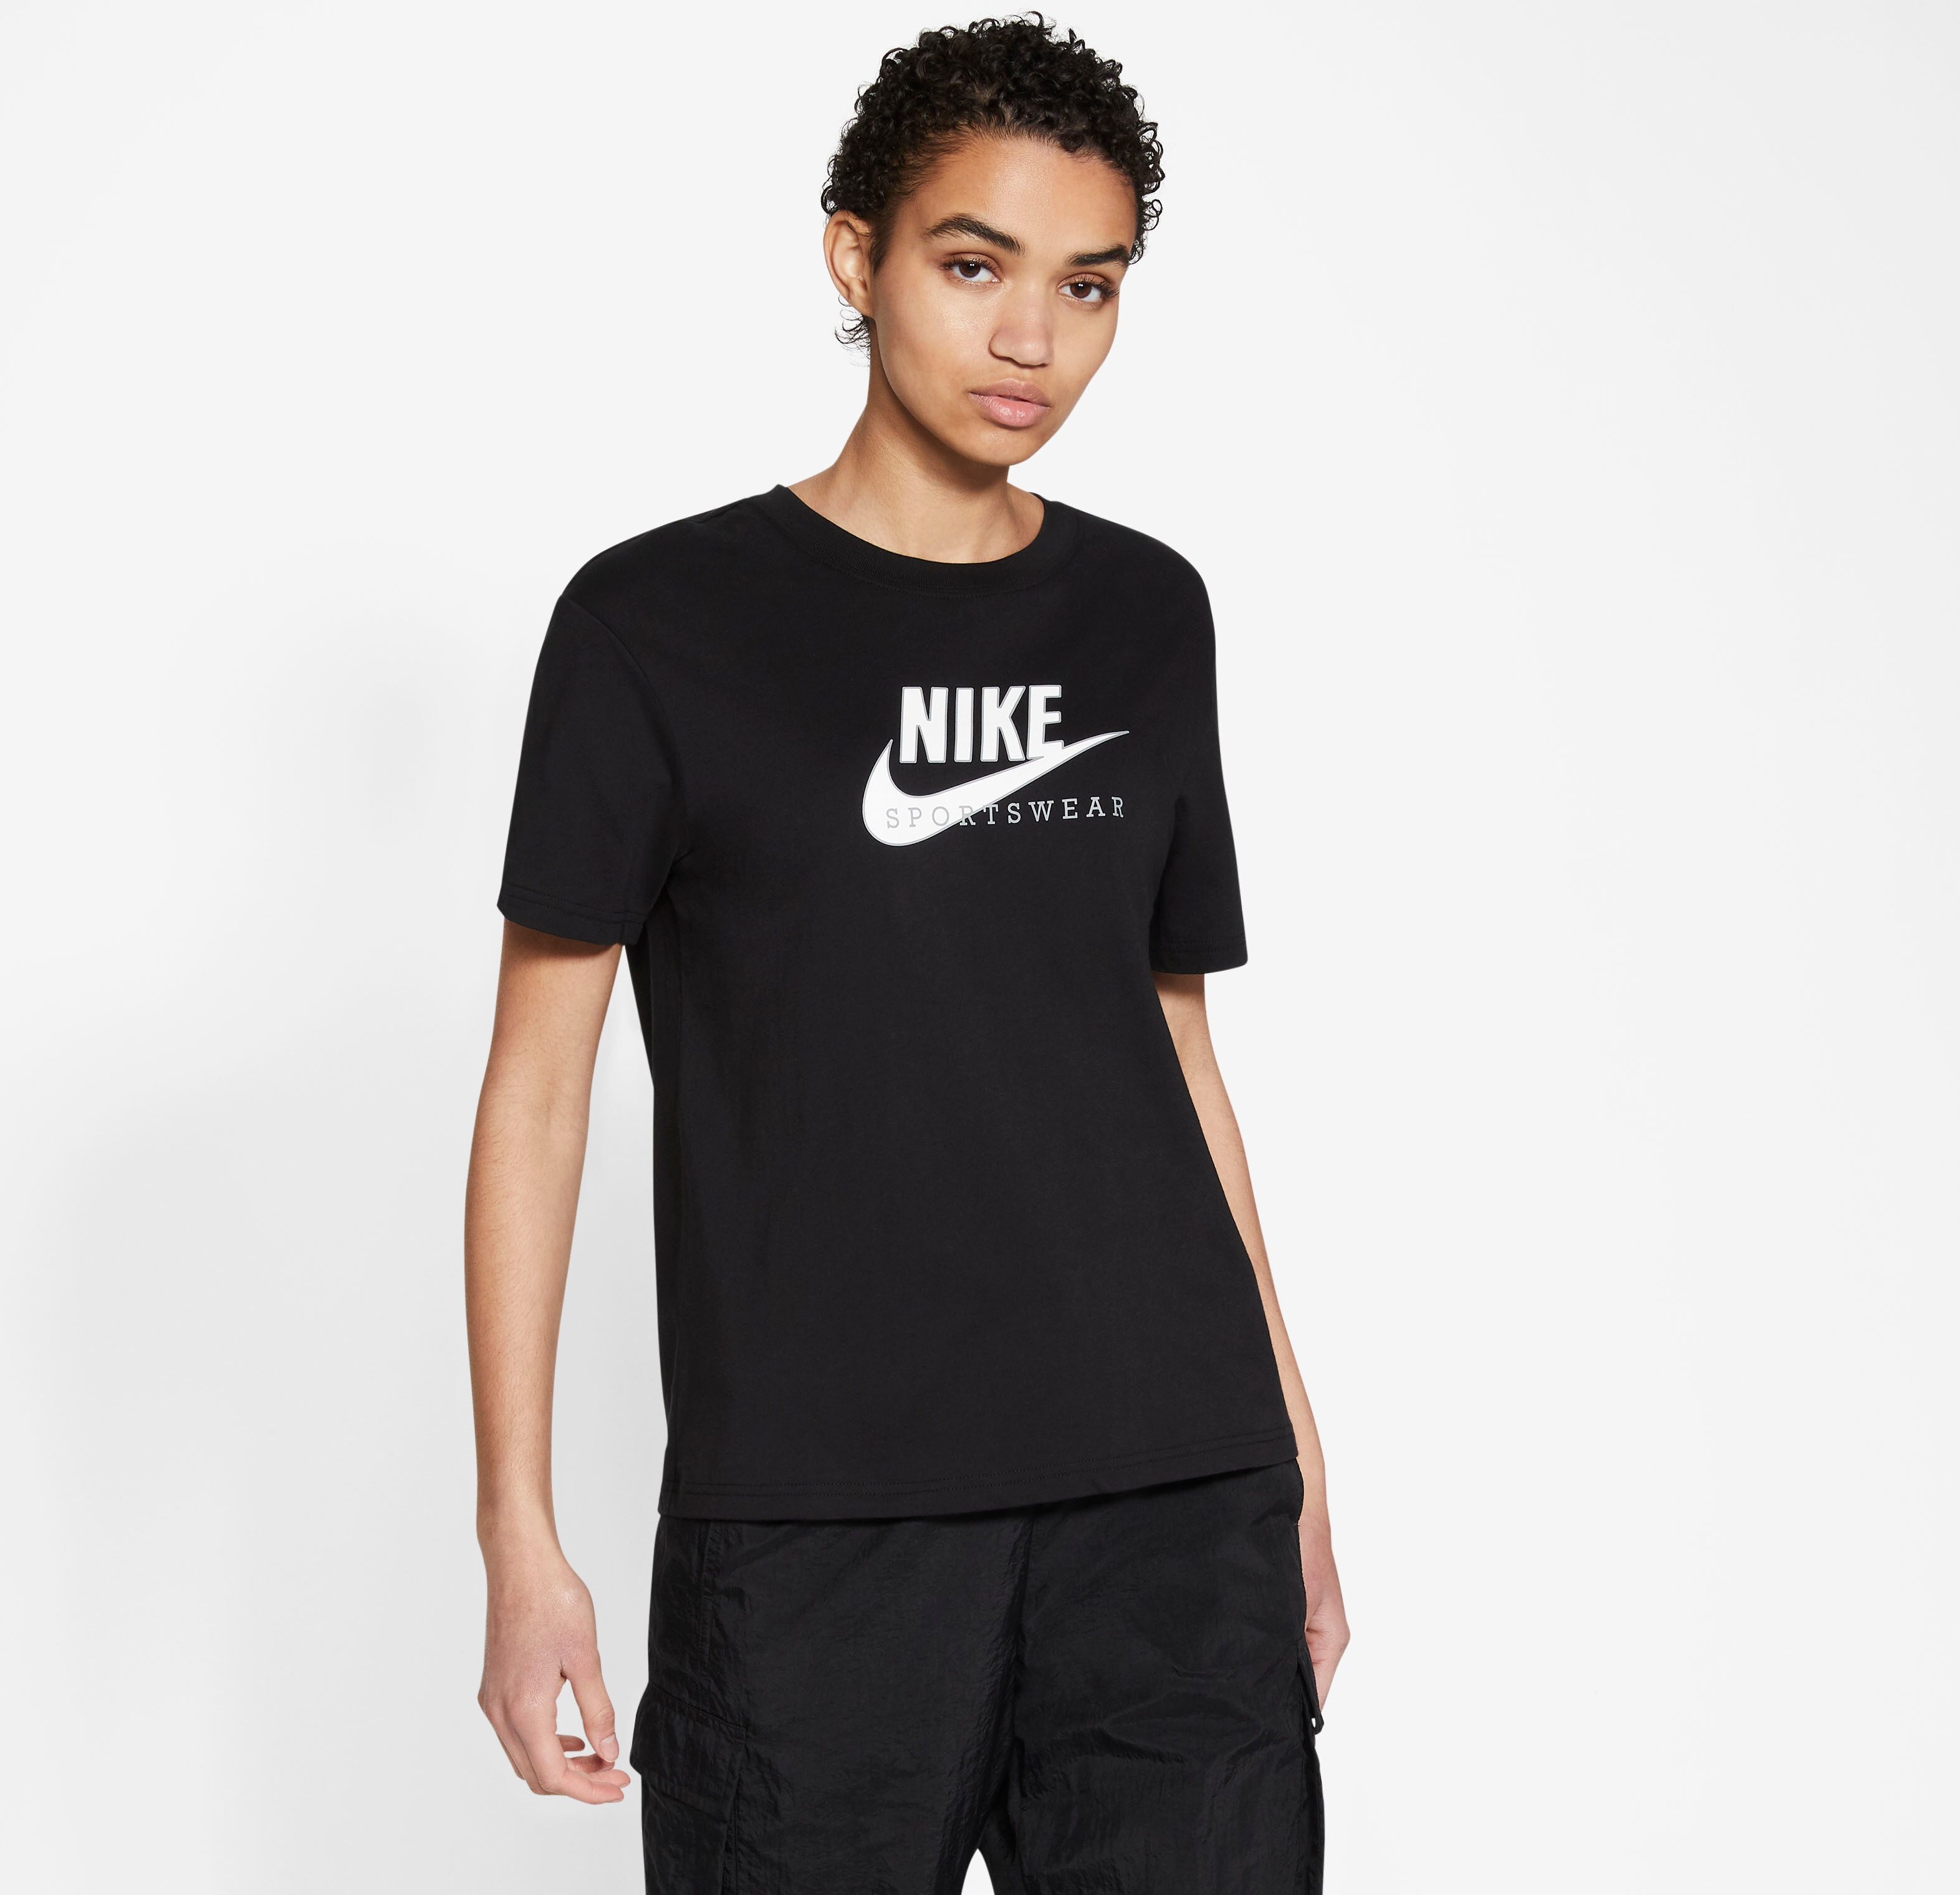 Nike Sportswear T-Shirt »Nike Sportswear Heritage Women's Short-sleeve Top« schwarz Größe L (42/44) M (38/40) S (34/36) XL (46/48) XS (30/32)